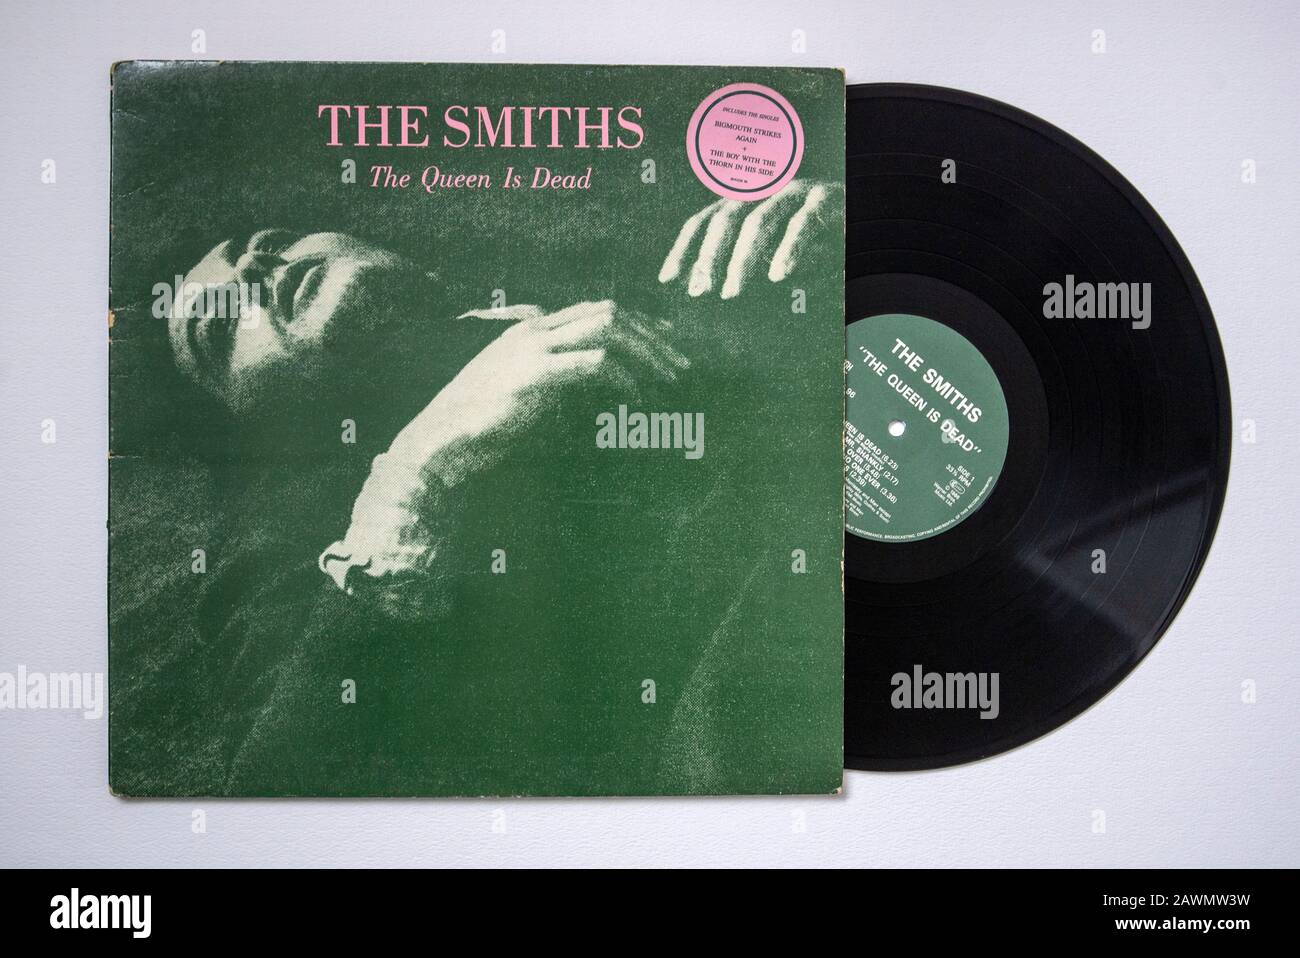 Copertina e vinile LP copia Del Queen Is Dead by The Smiths, il terzo album  in studio della band di Manchester, pubblicato nel 1986 Foto stock - Alamy